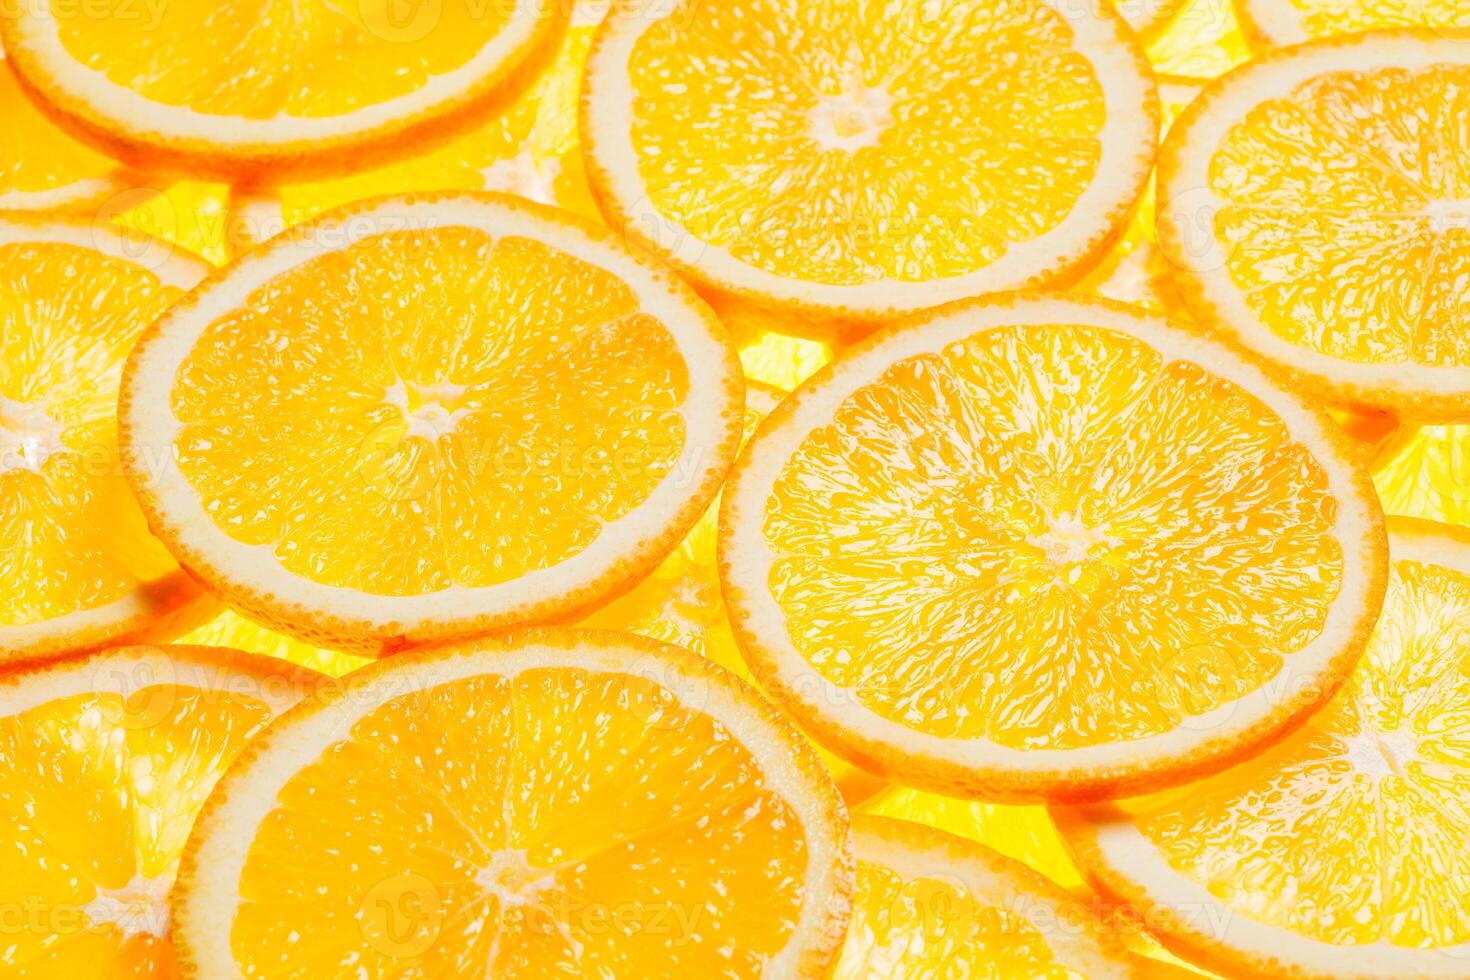 fatias de frutas coloridas de laranja foto